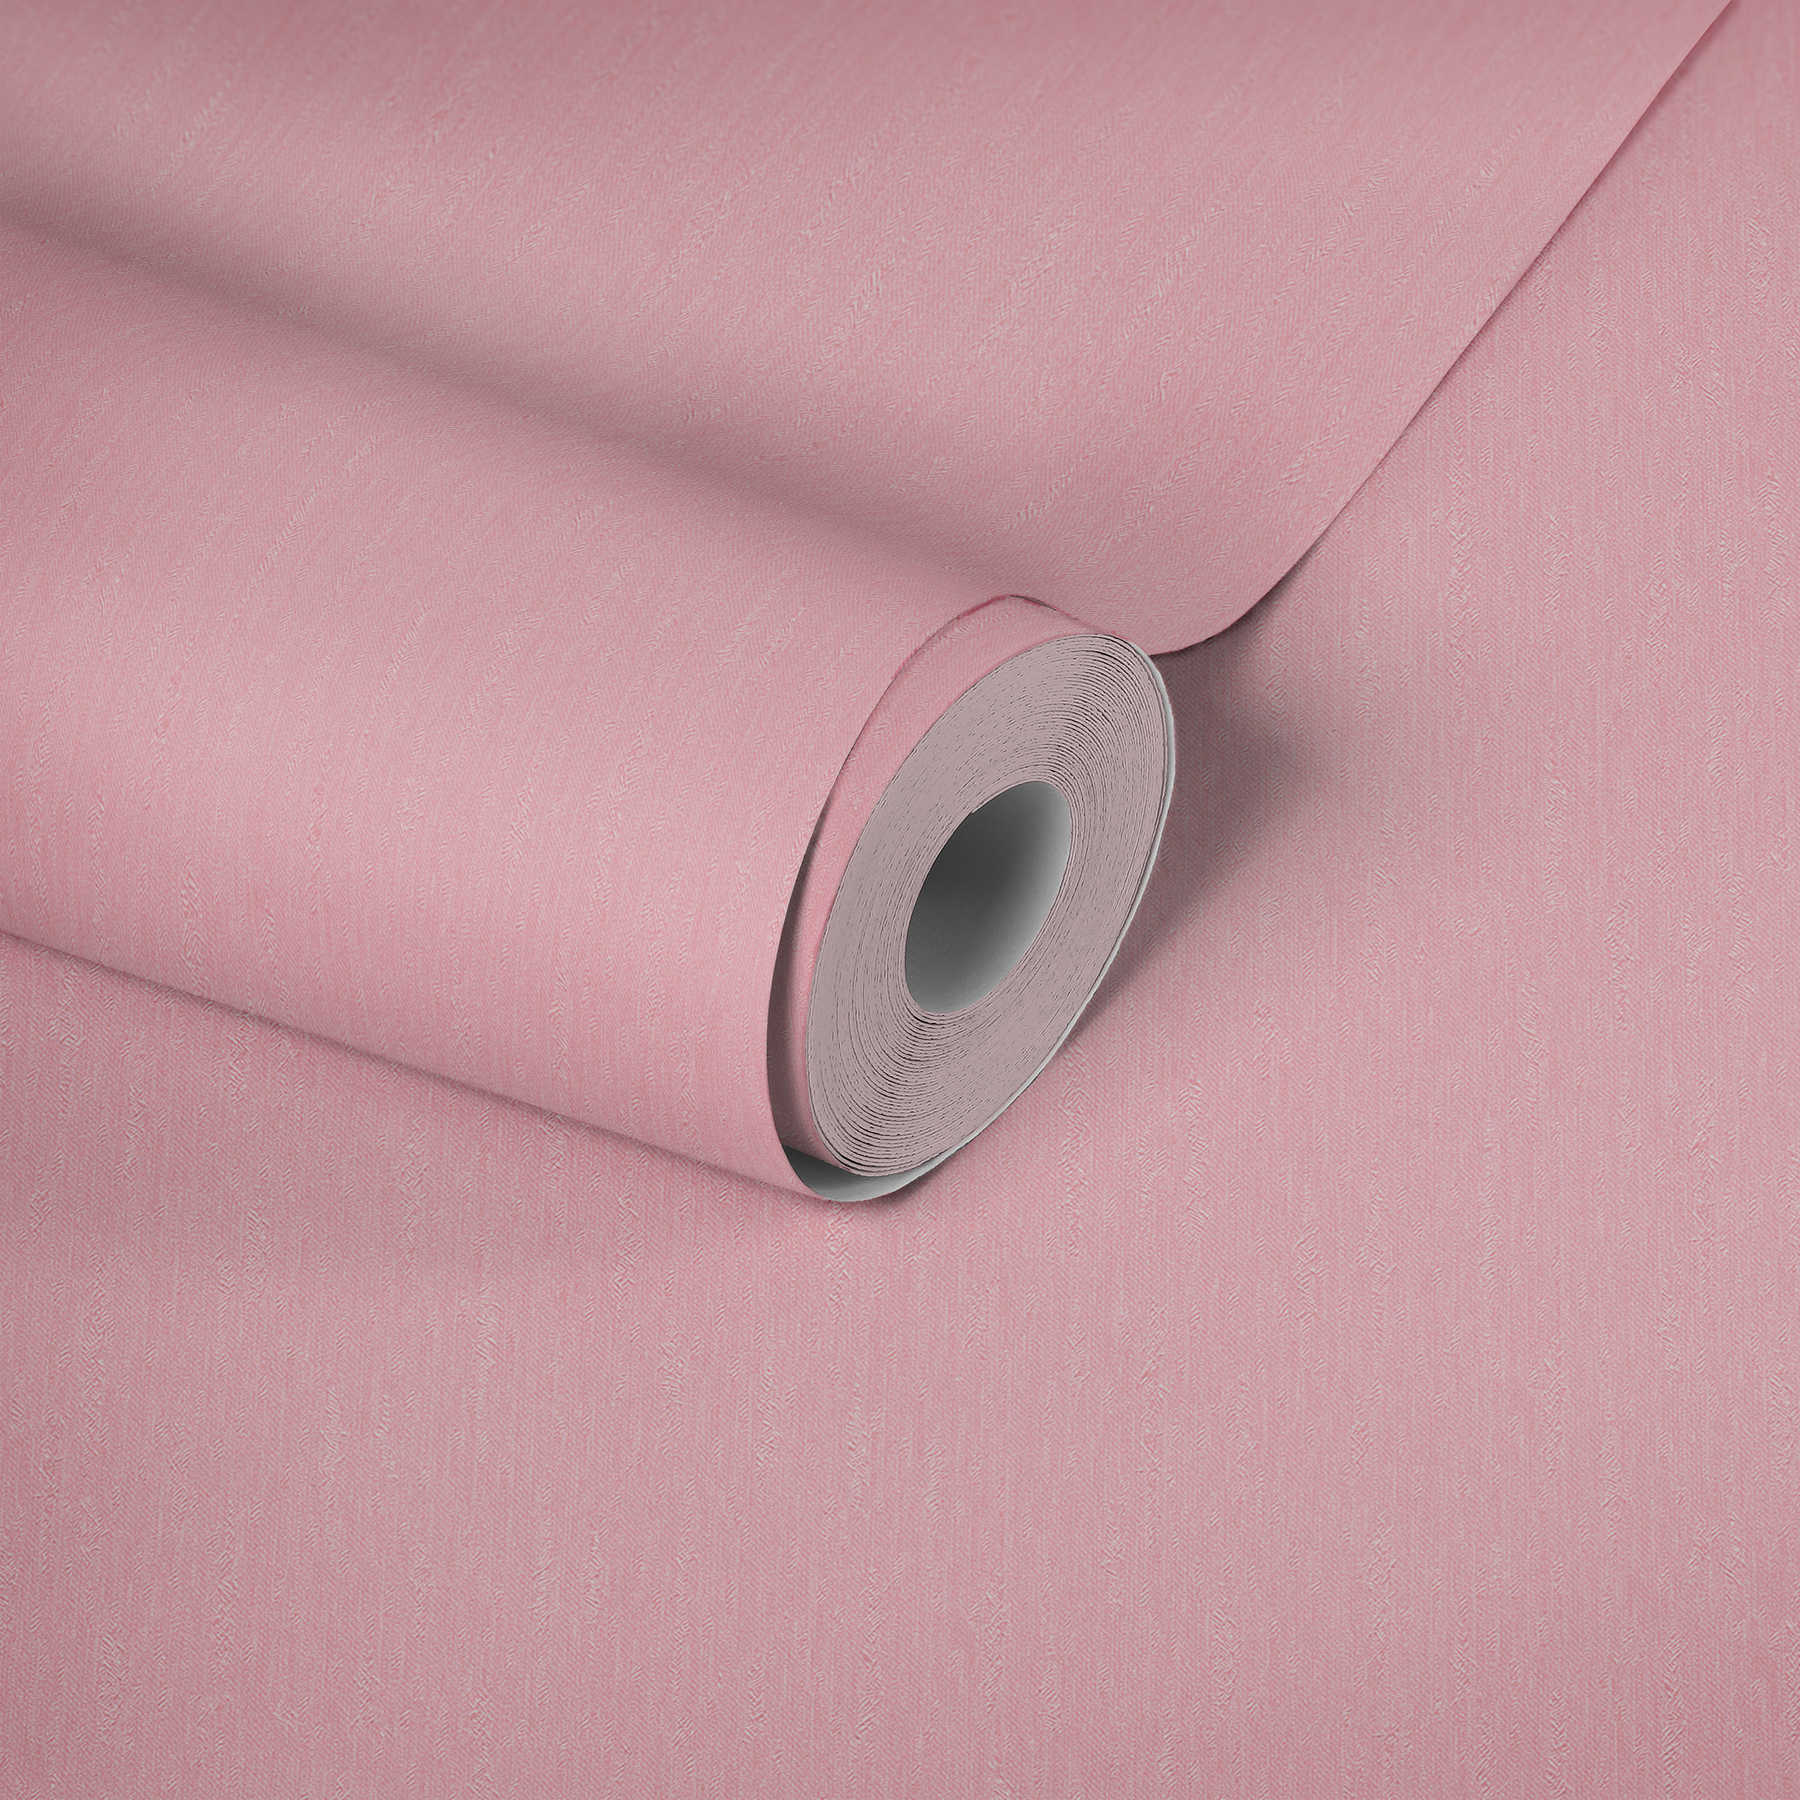             Roze vliesbehang effen lichtroze met structuur oppervlak
        